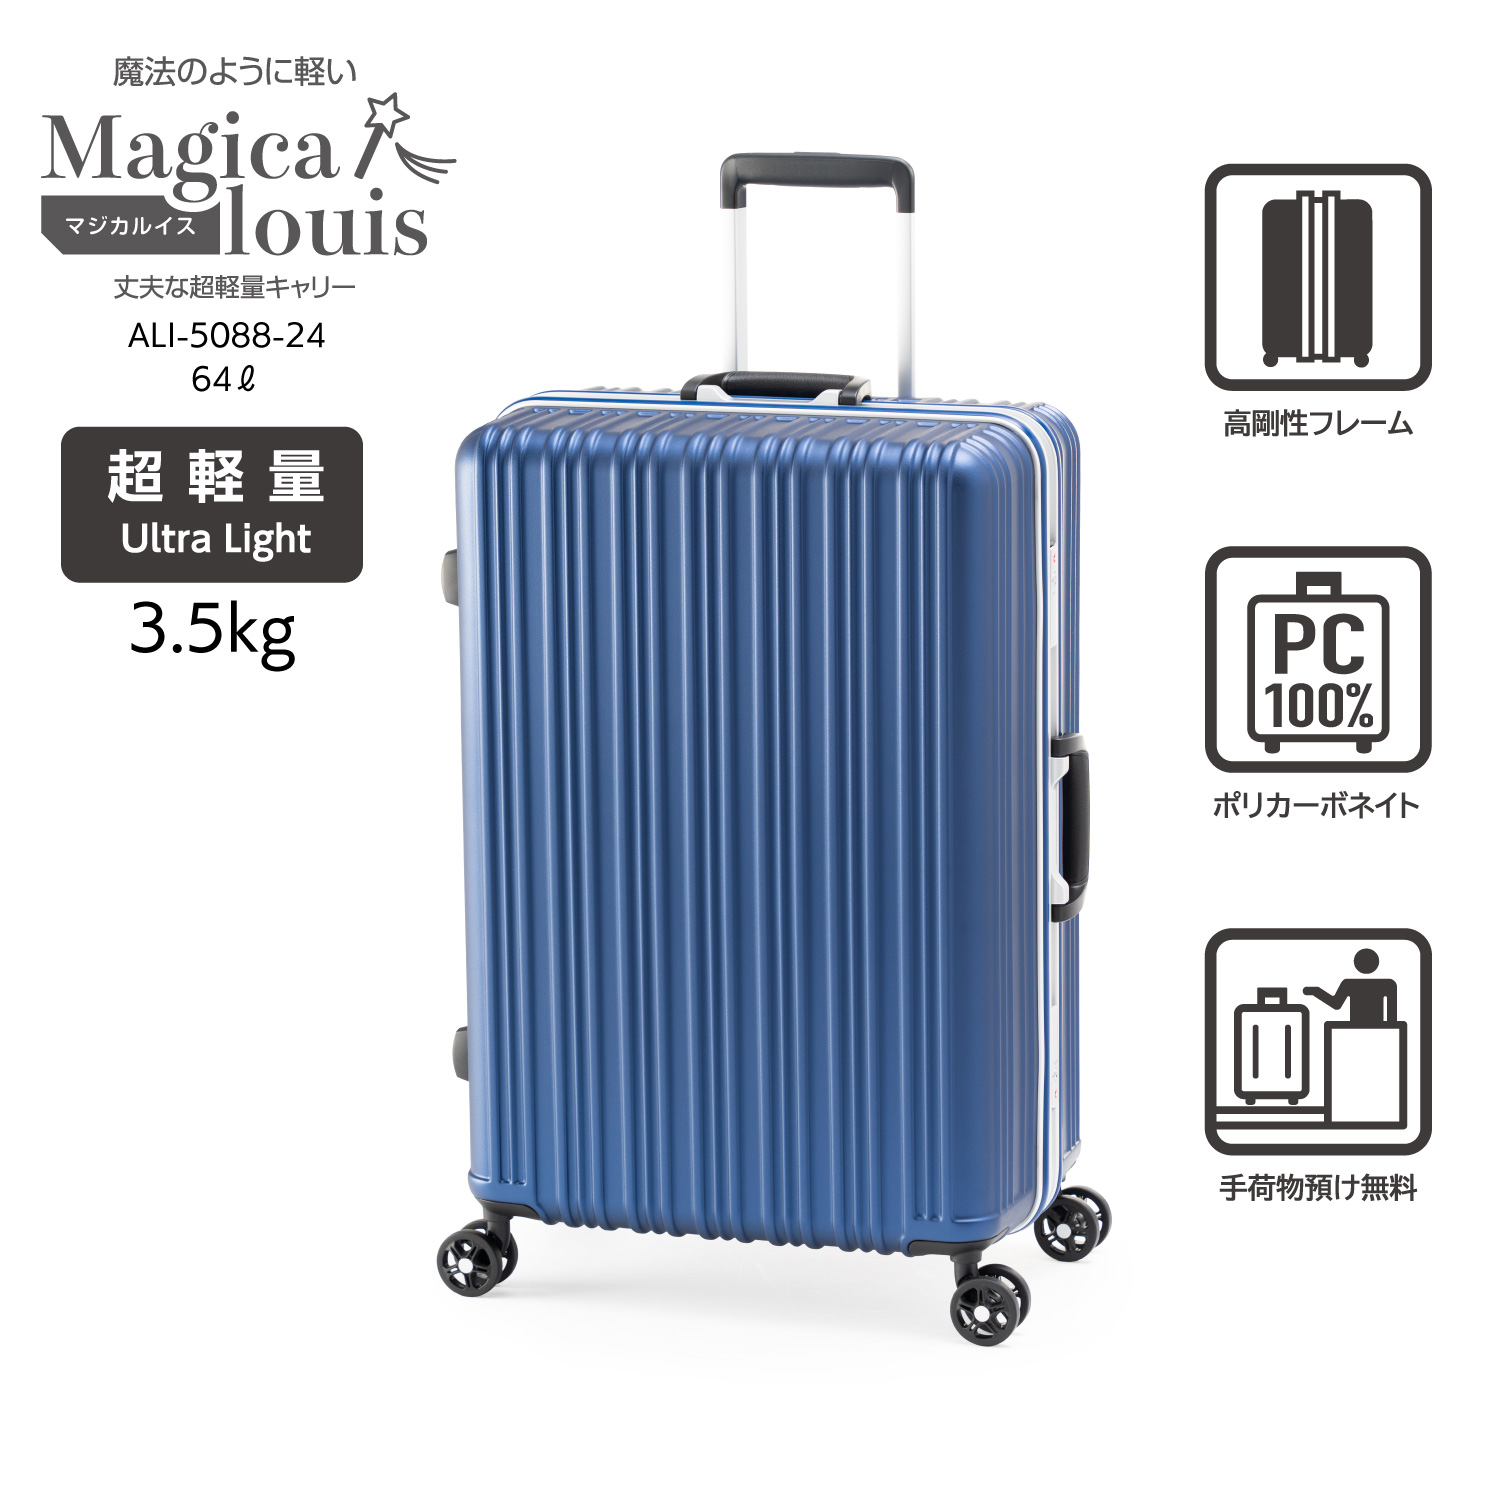 ハードキャリー | アジア・ラゲージ 公式サイト | Asia Luggage Inc.